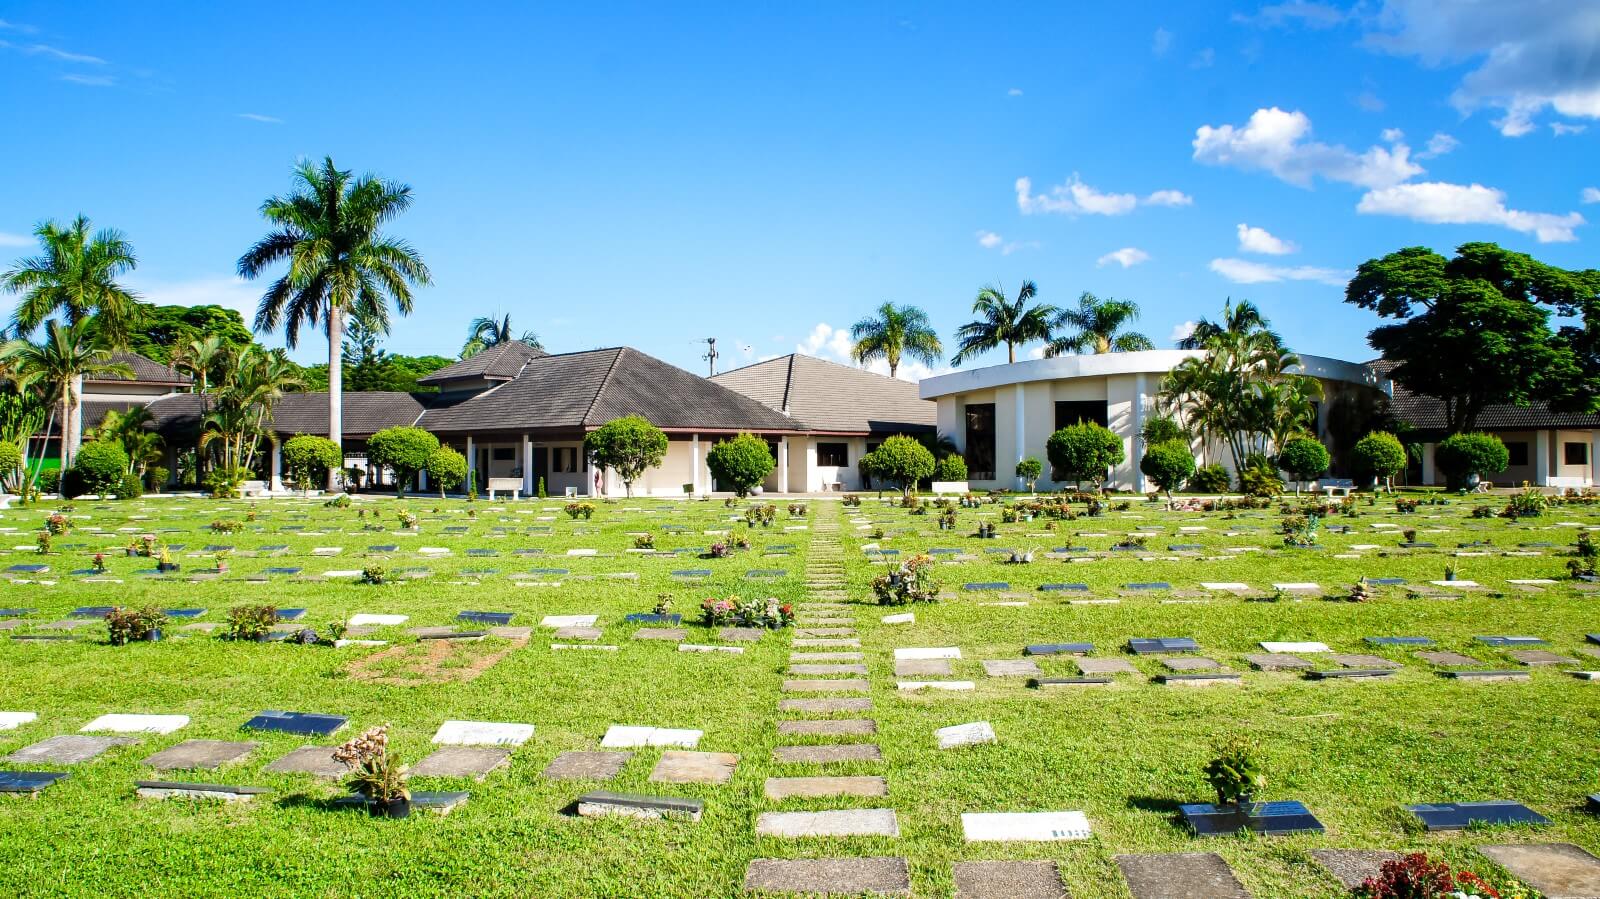 Área de jazigos do Parque das Flores cemitério em São José dos Campos